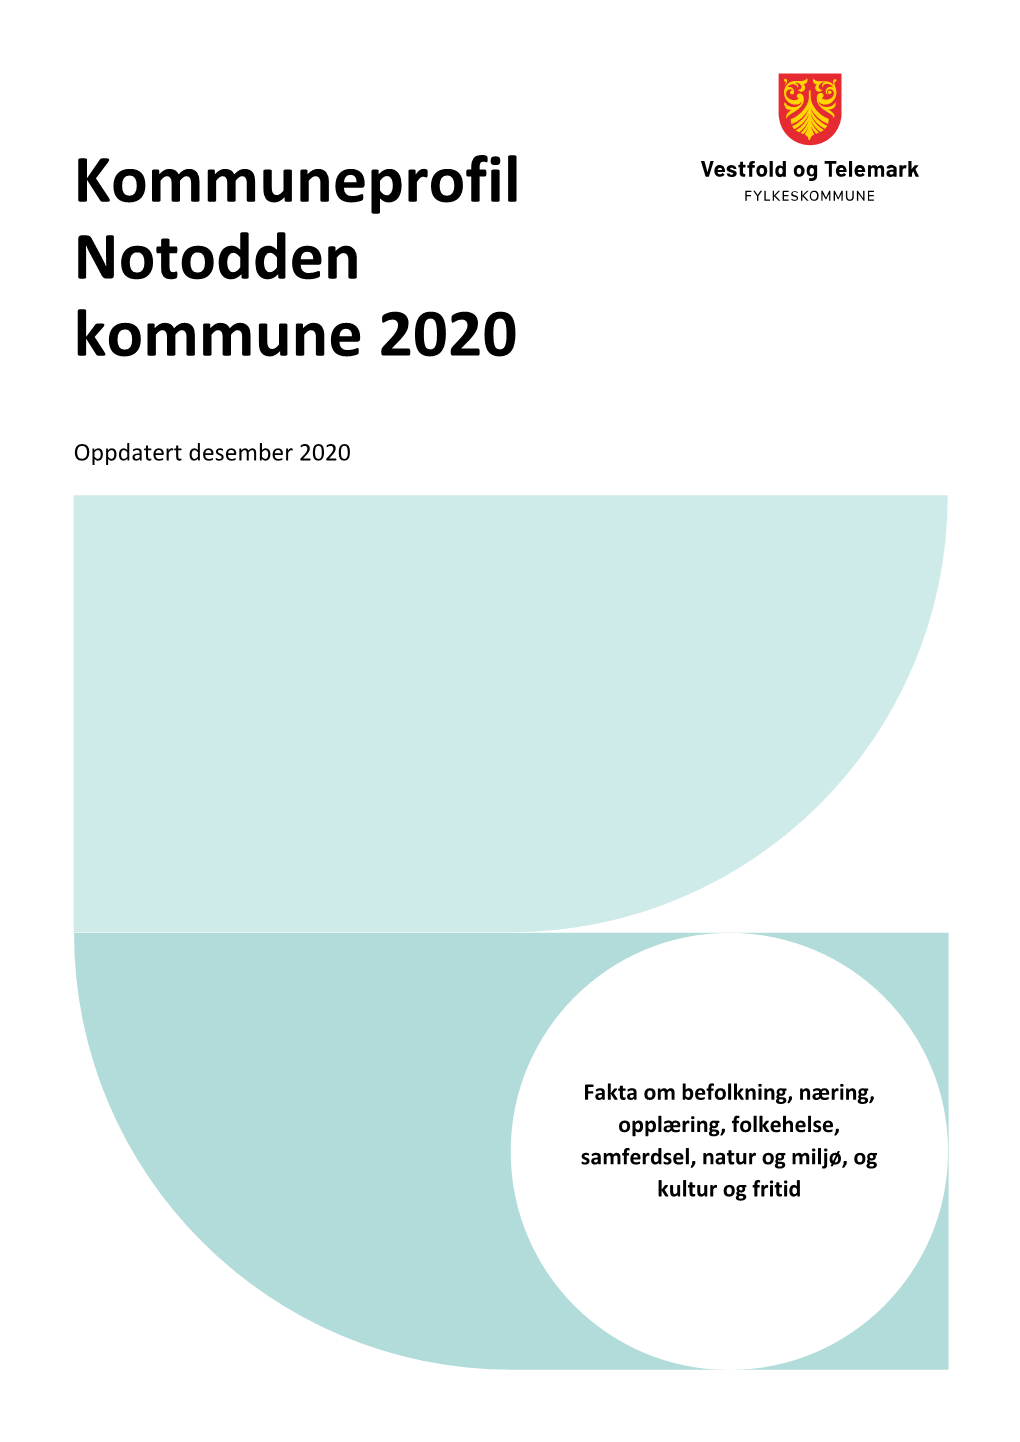 Kommuneprofil Notodden Kommune 2020